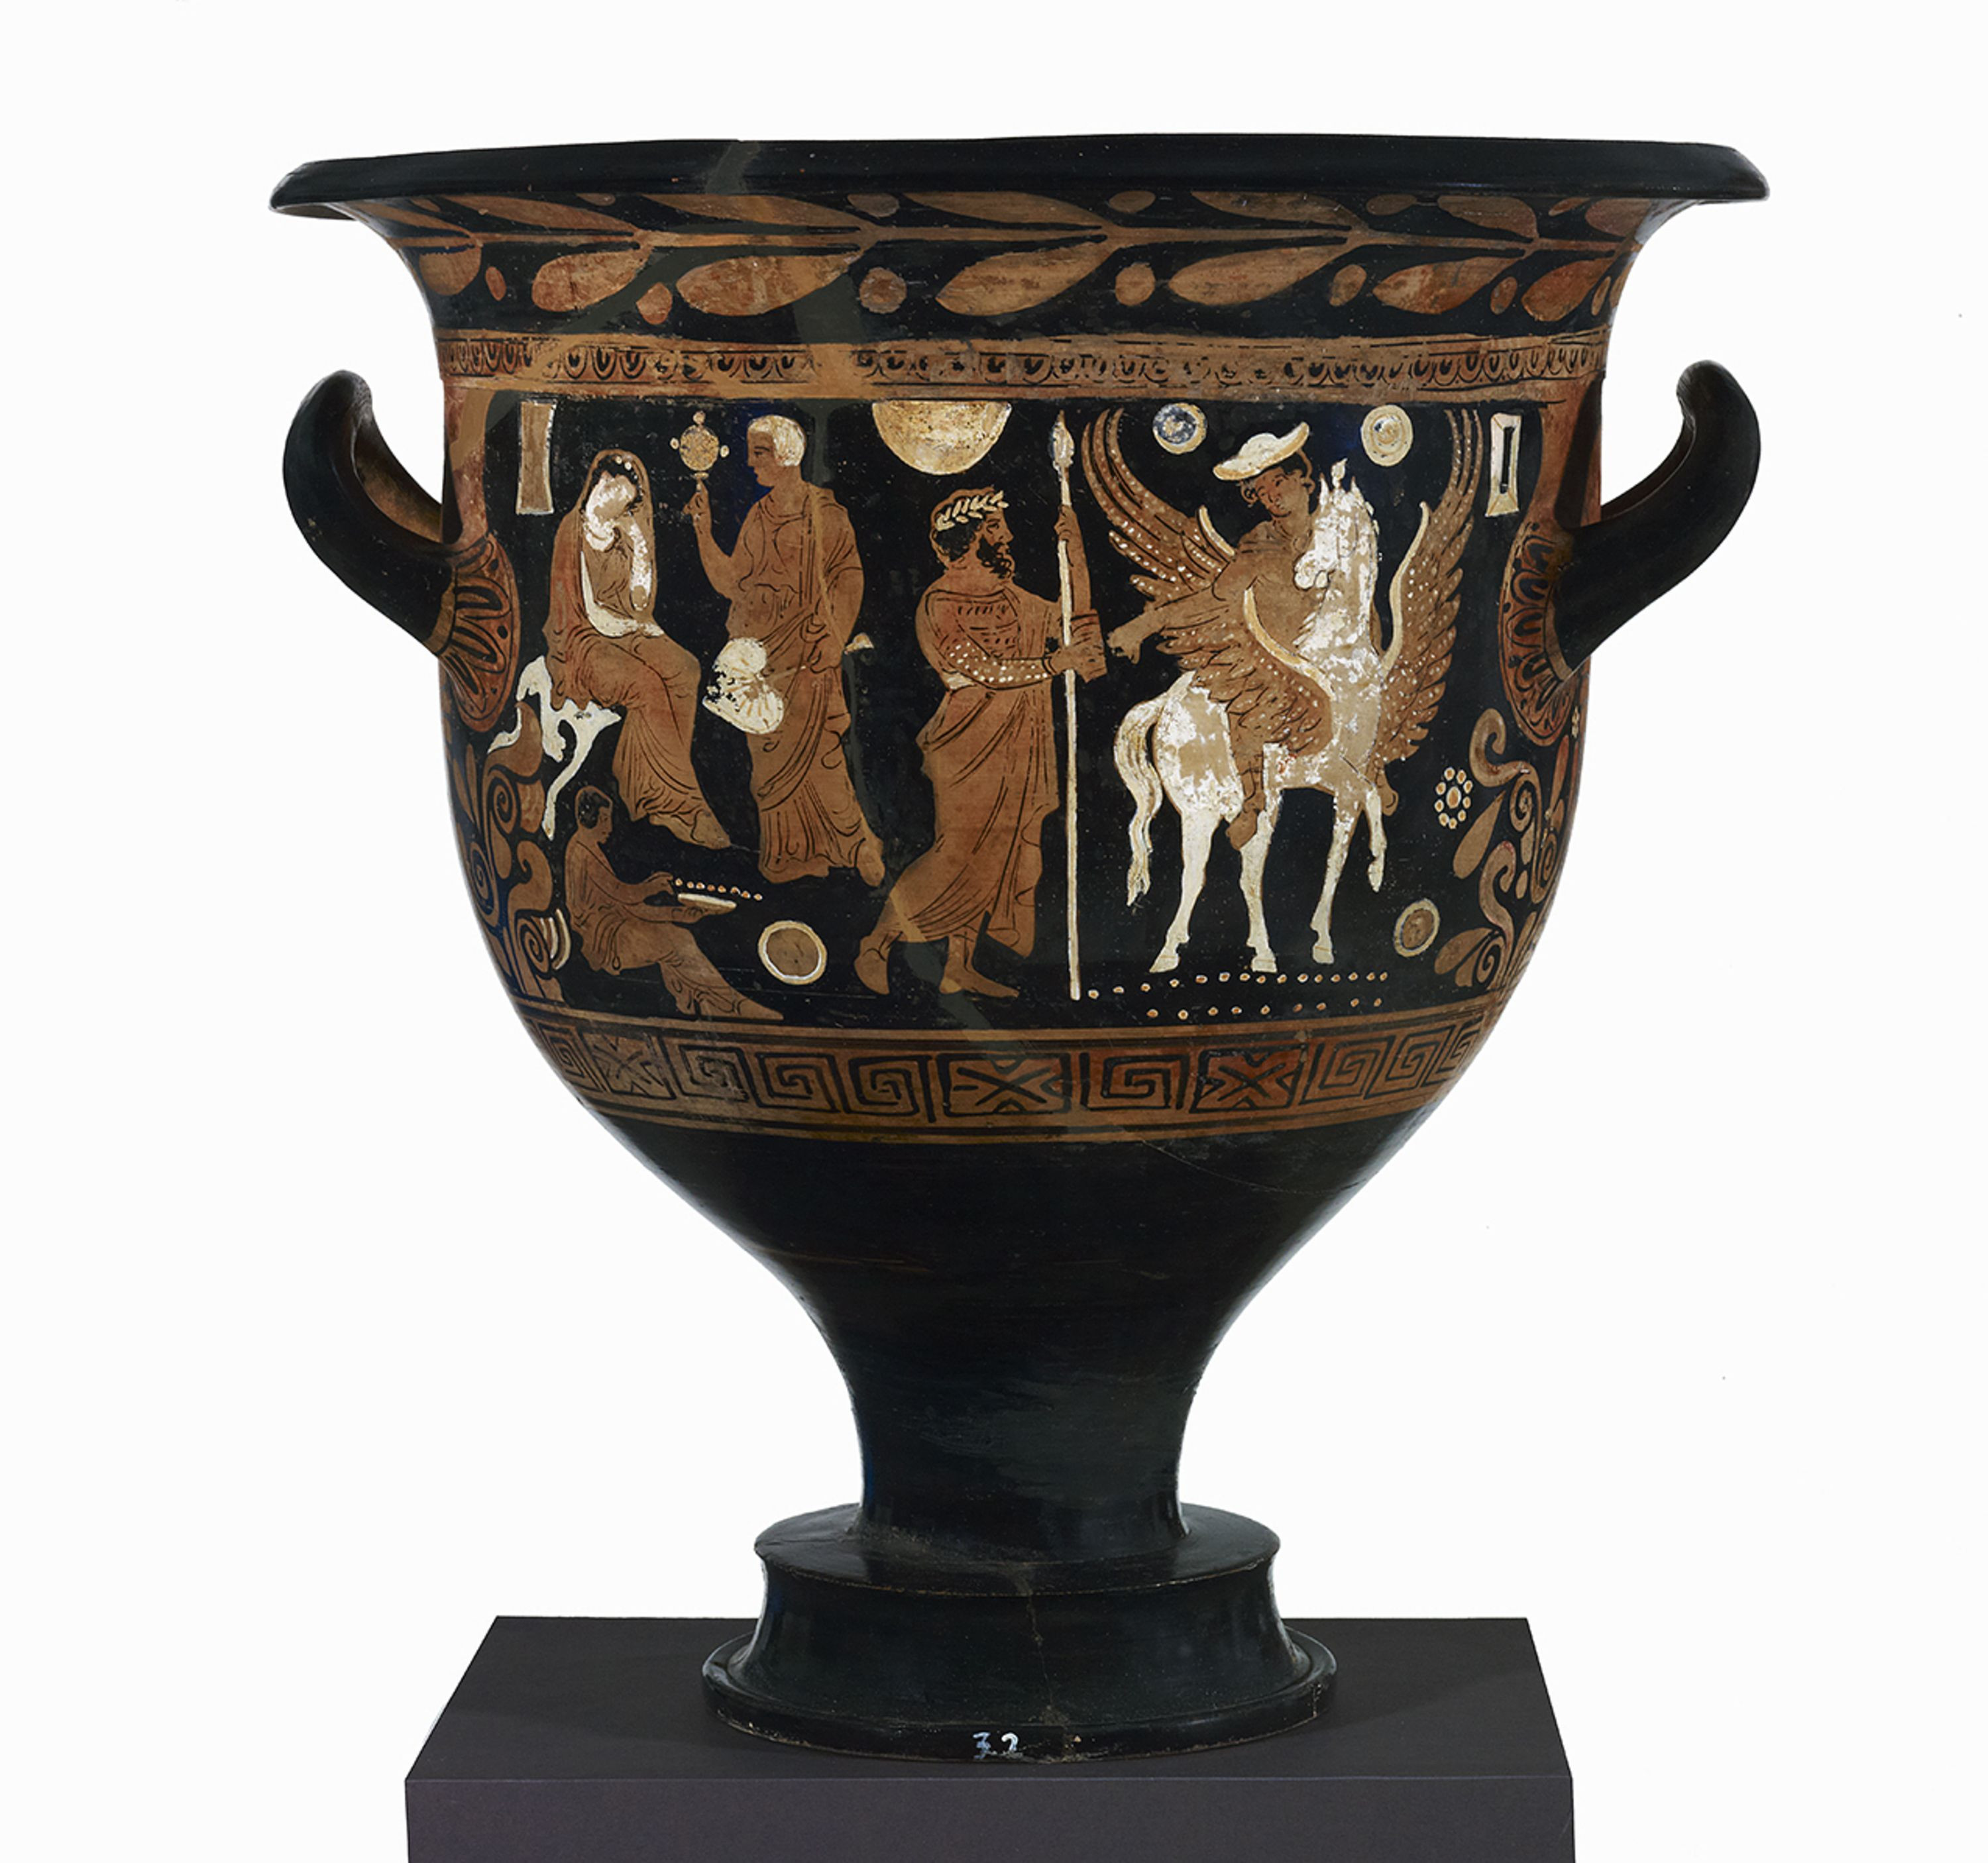 13 Fantastic Ancient Greek Vases 2024 free download ancient greek vases of pin by meral cetin on greek roman etruscan pottery pinterest in civilization romans romances